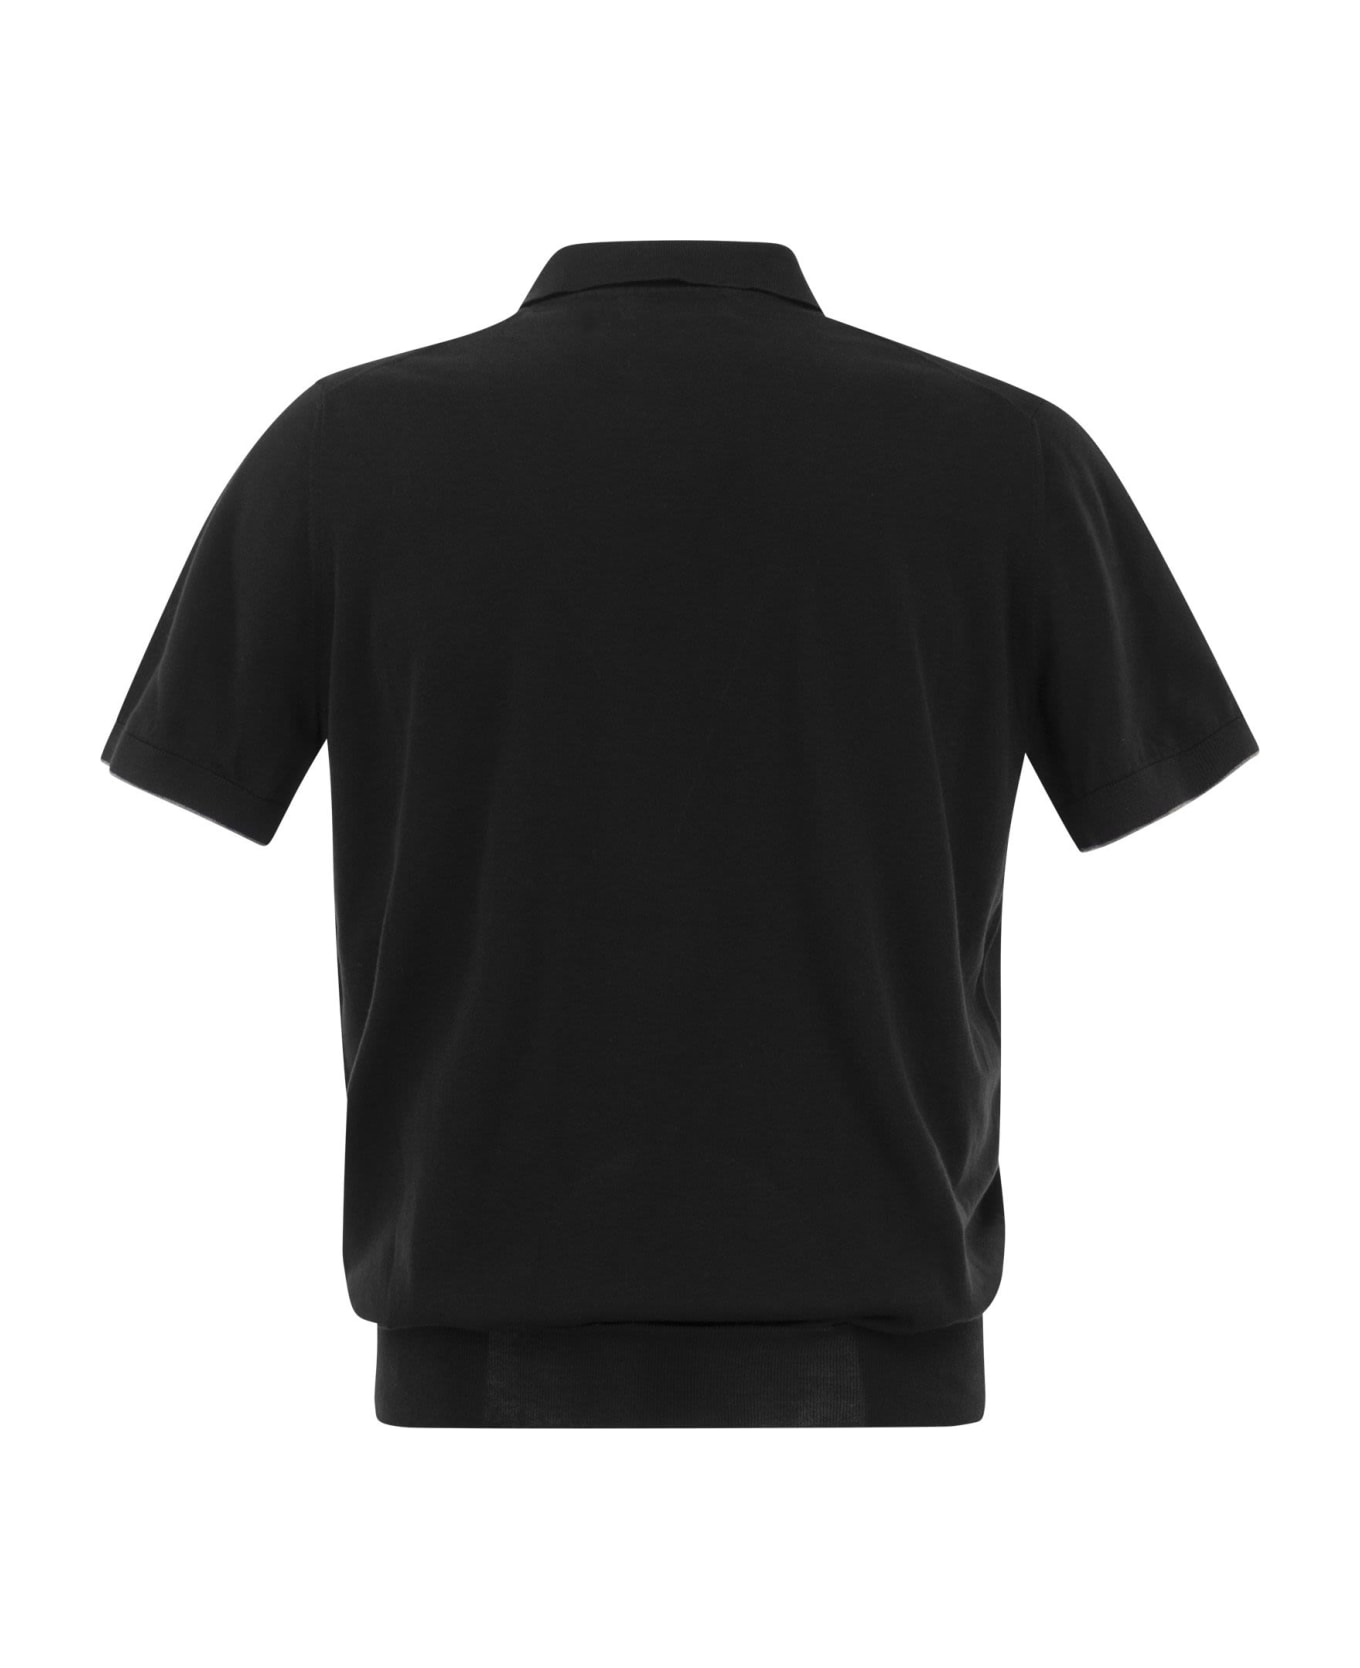 Brunello Cucinelli Cotton Polo Style Sweater - Black ポロシャツ